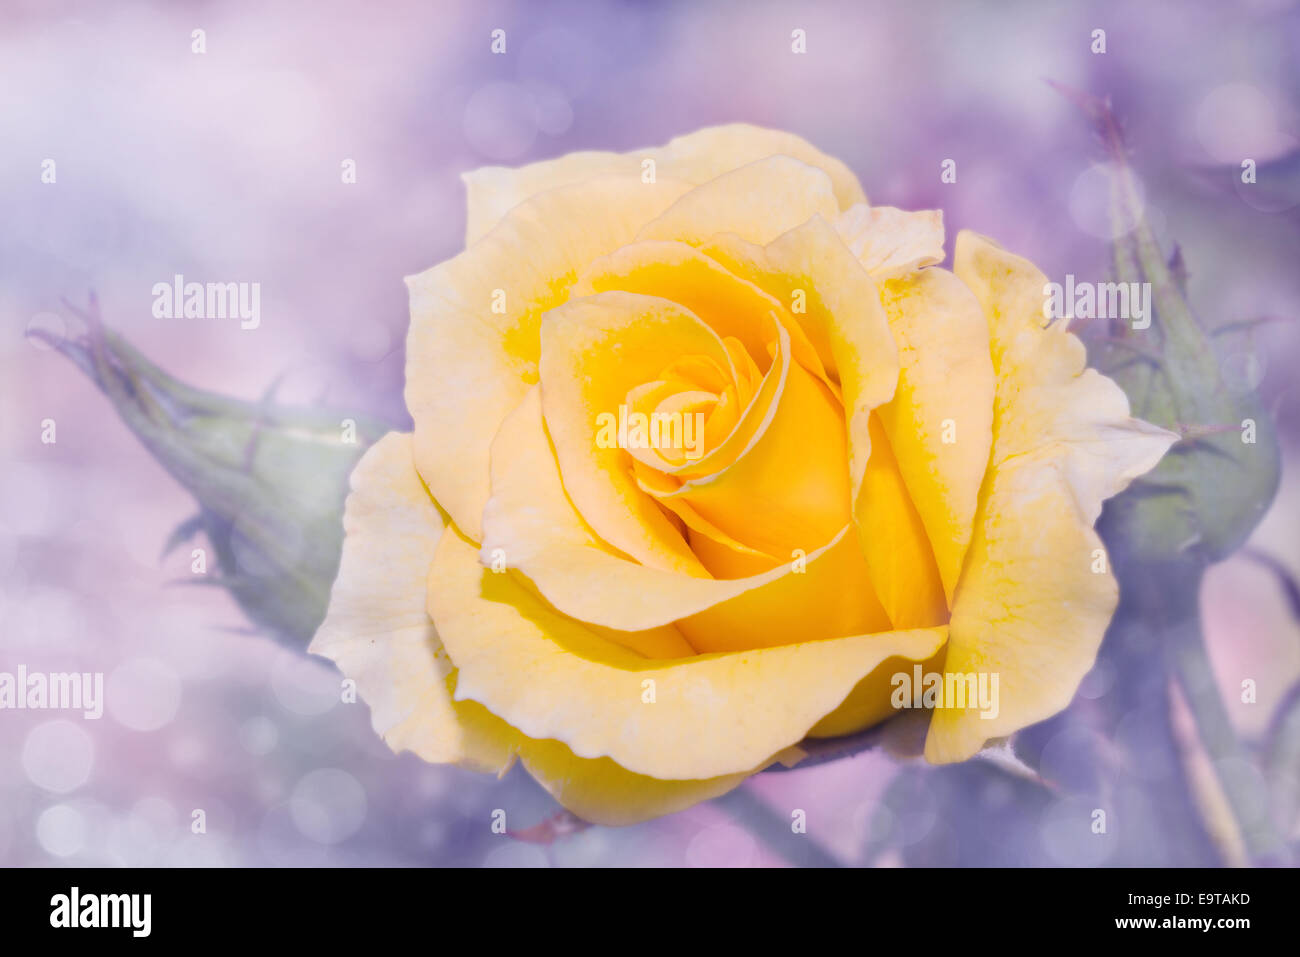 Imagen de ensueño de una rosa amarilla con delicado fondo púrpura Foto de stock